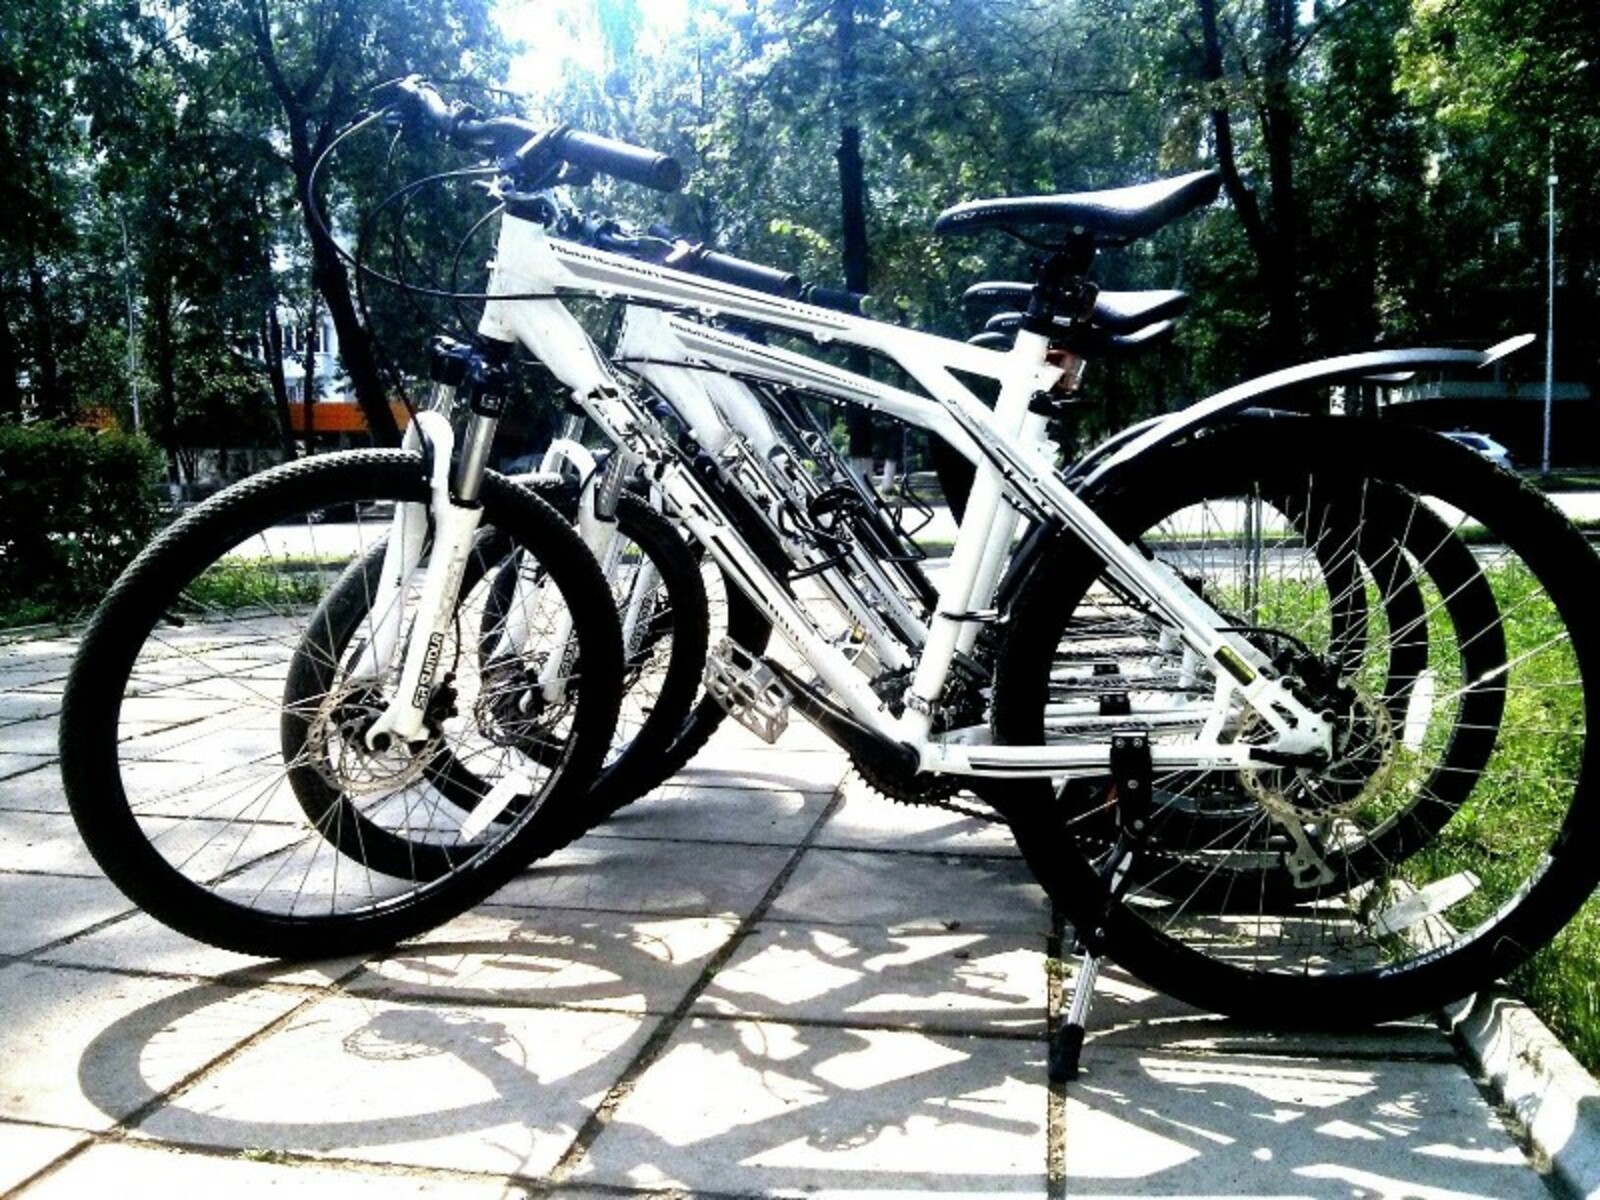 Фото украденных велосипедов предоставлено Жанной Исаевой.